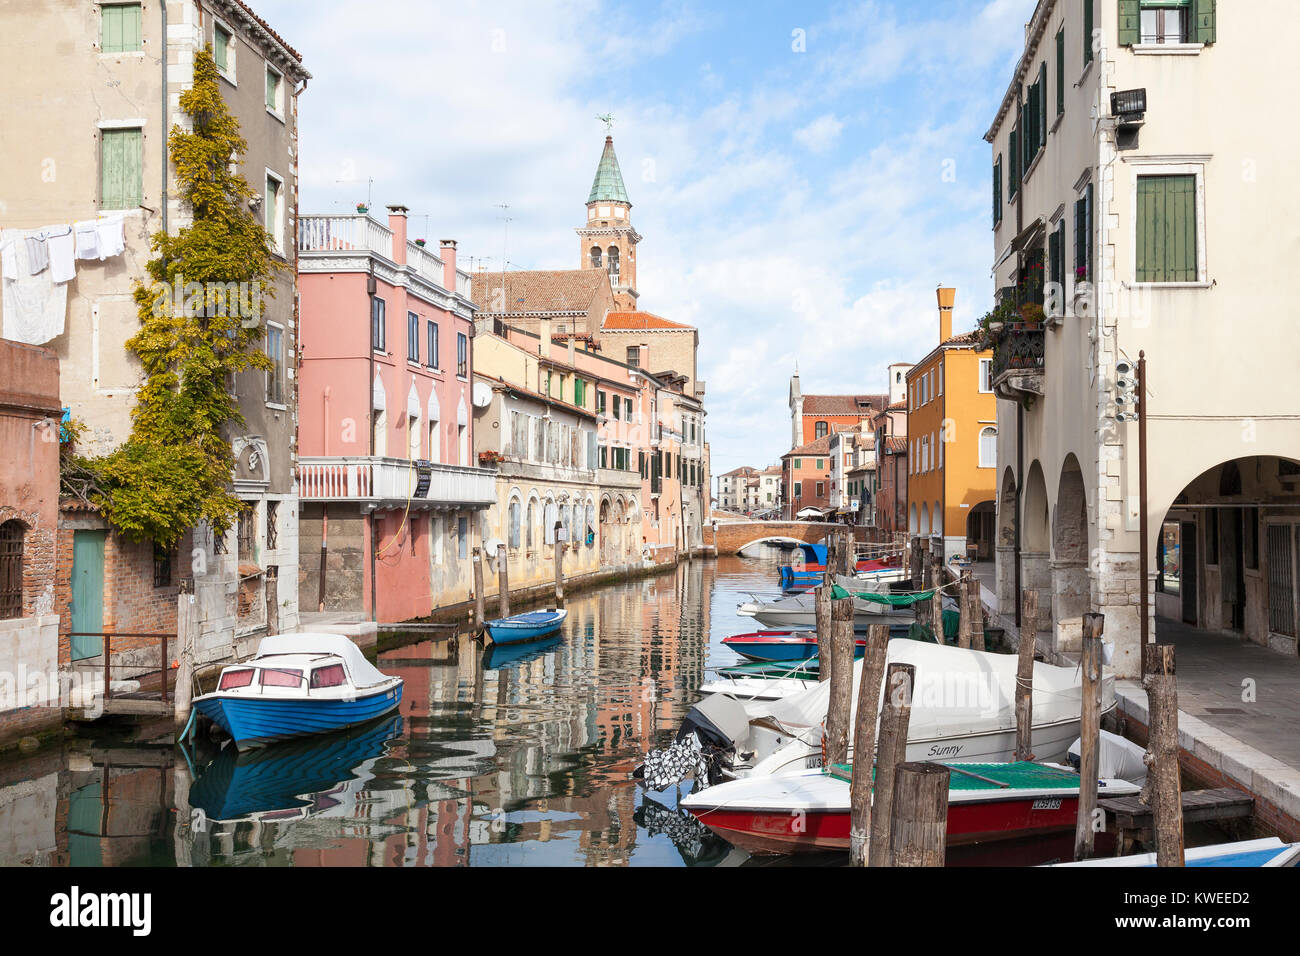 Vue tranquille de Canal Vena, Chioggia, lagune de Venise, Venise, Italie. Chioggia est un important port de pêche dans le Nord de l'Italie Banque D'Images